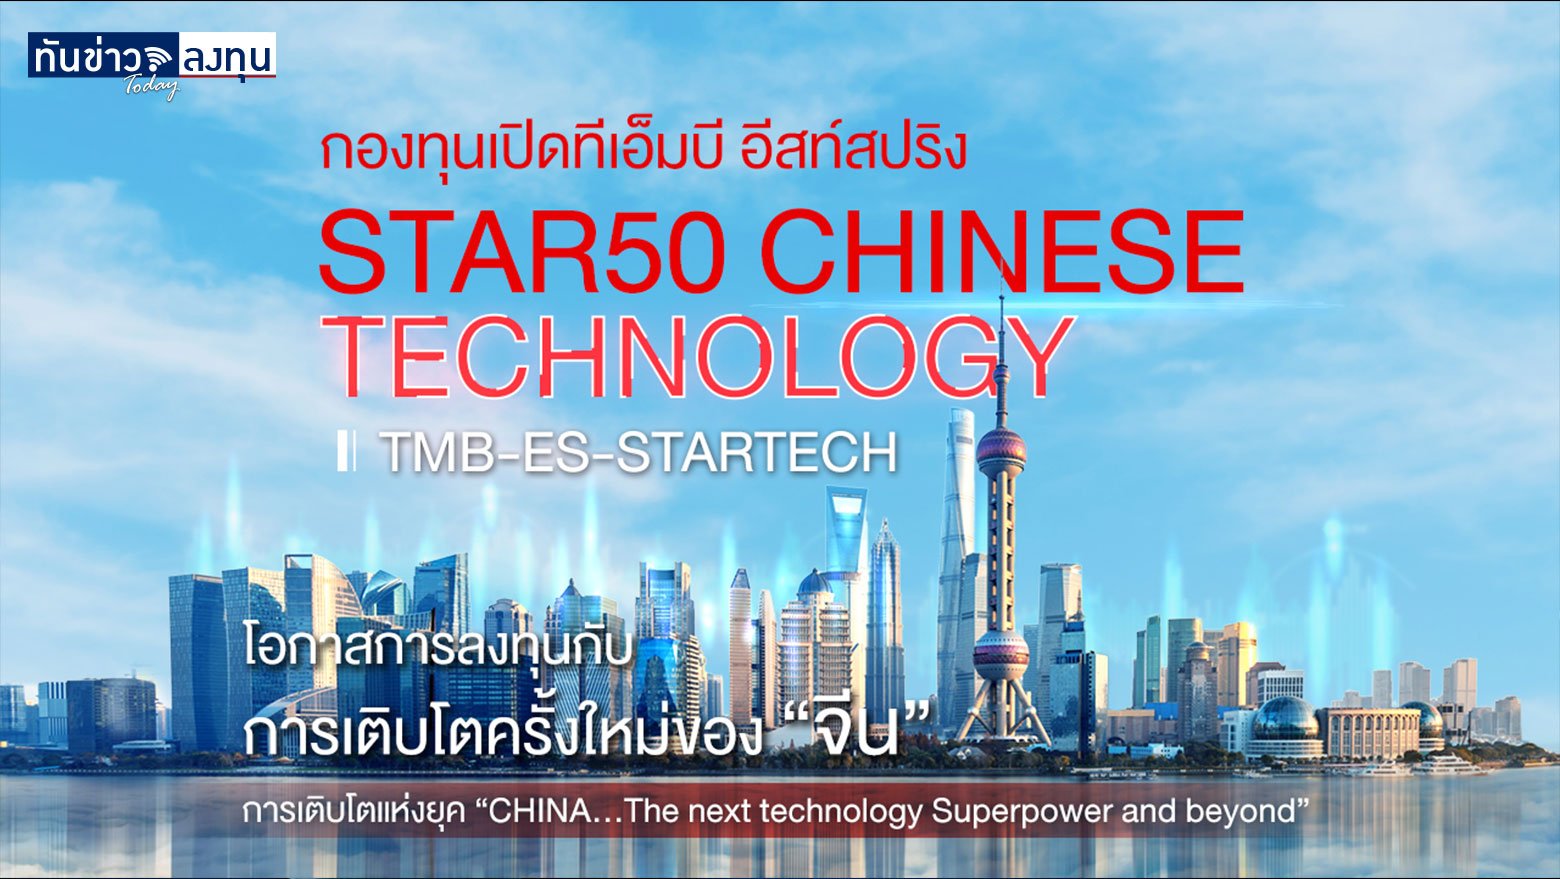 กองทุนเปิดทีเอ็มบี อีสท์สปริง STAR50 Chinese Technology (TMB-ES-STARTECH)